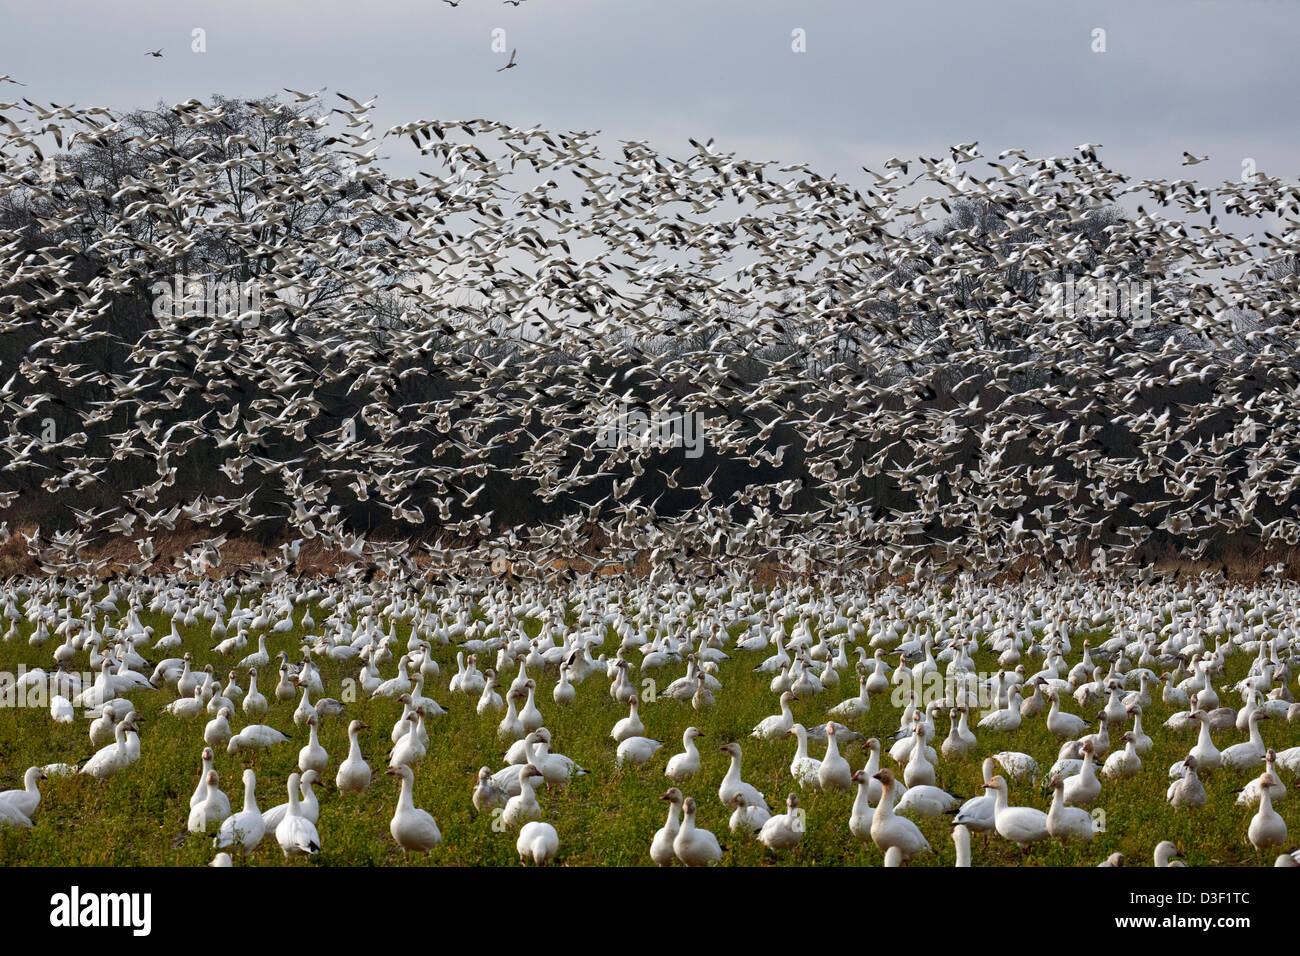 WASHINGTON - un grand troupeau d'oies blanches dans un champ agricole d'être rejoint par un second groupe sur l'île de sapin dans le Delta de la rivière Skagit. Banque D'Images